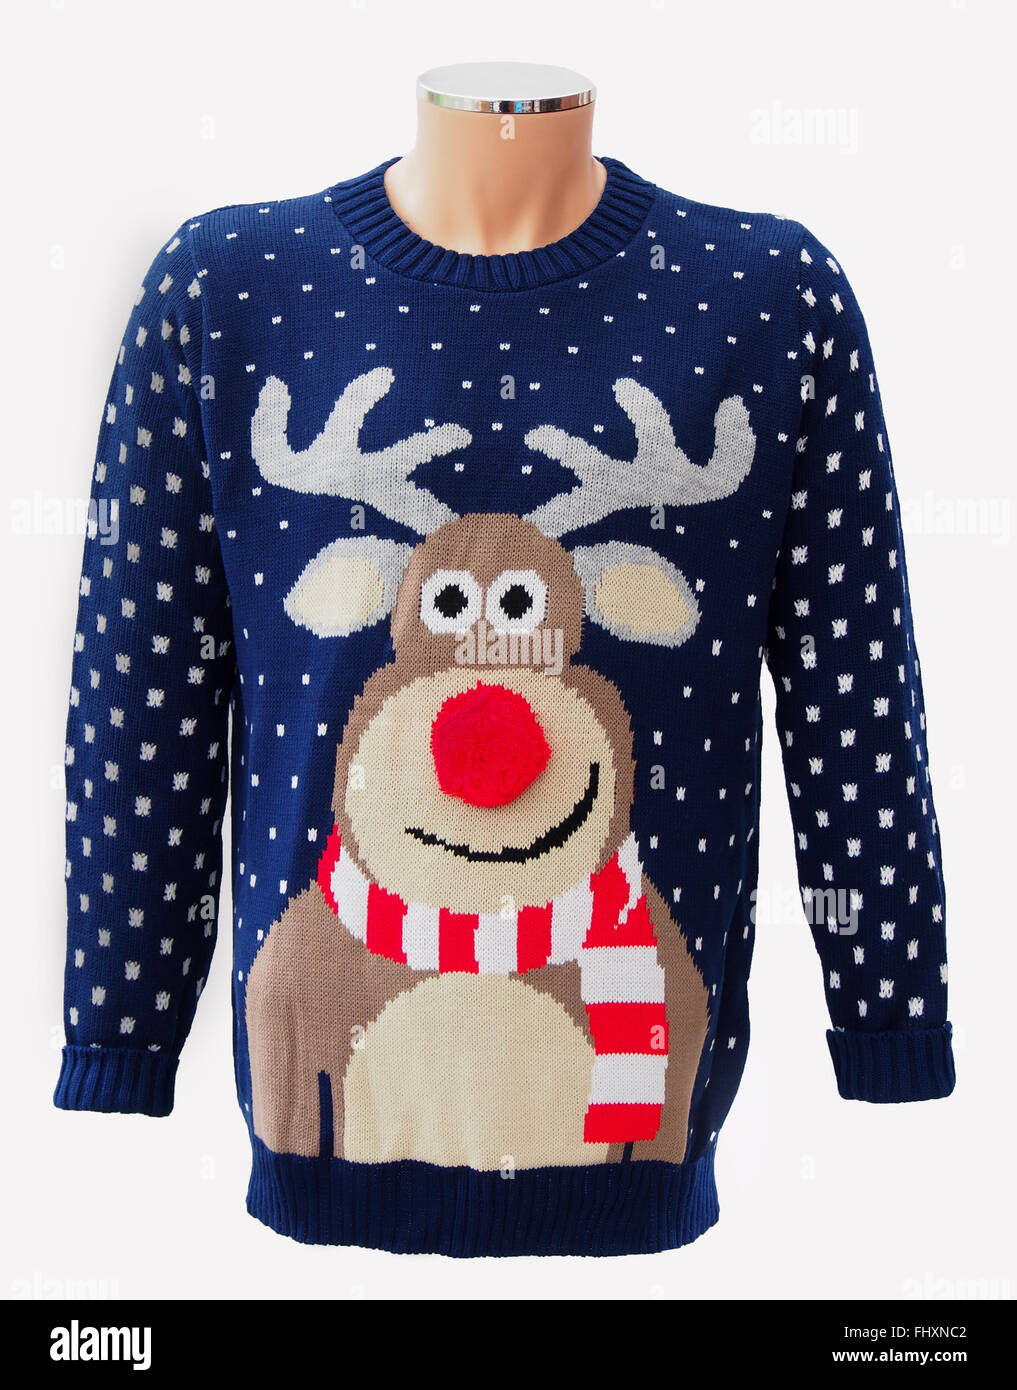 Blau gestrickt Erwachsenen Weihnachtspullover, Rudolph mit der roten Nase Rentier und Schneeflocken, isoliert auf einem weißen Hintergrund. Stockfoto